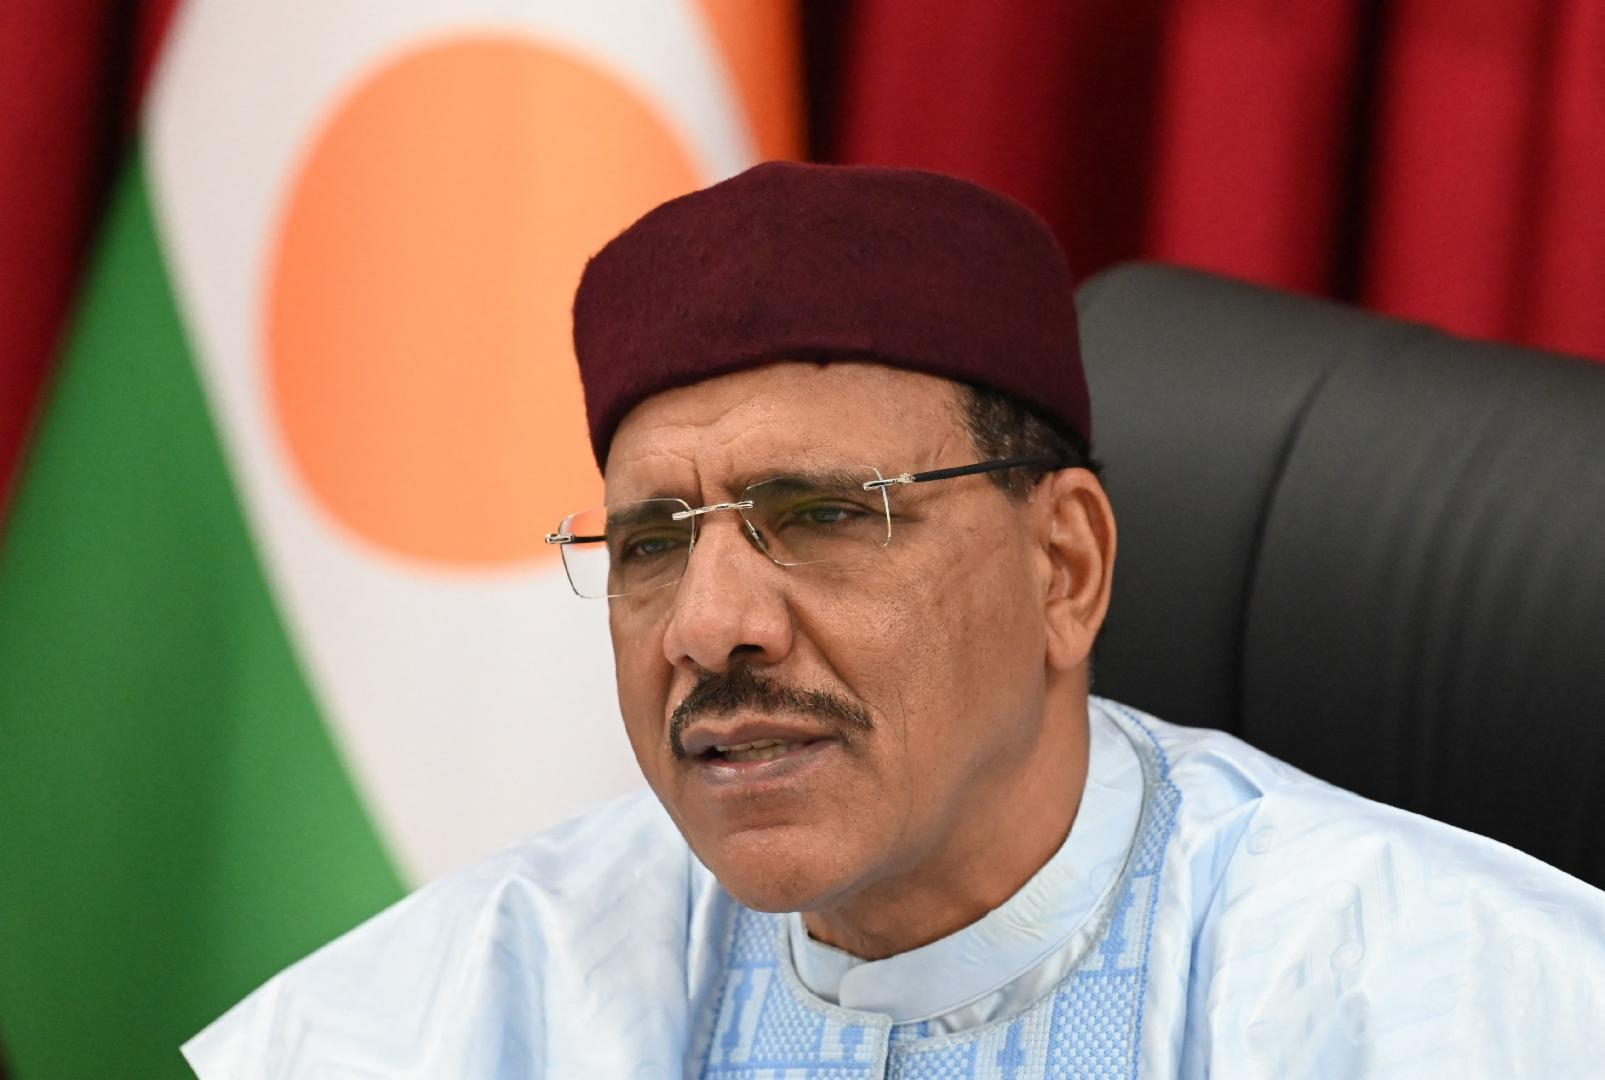 Niger : la délégation ouest-africaine a rencontré le président renversé Mohamed Bazoum